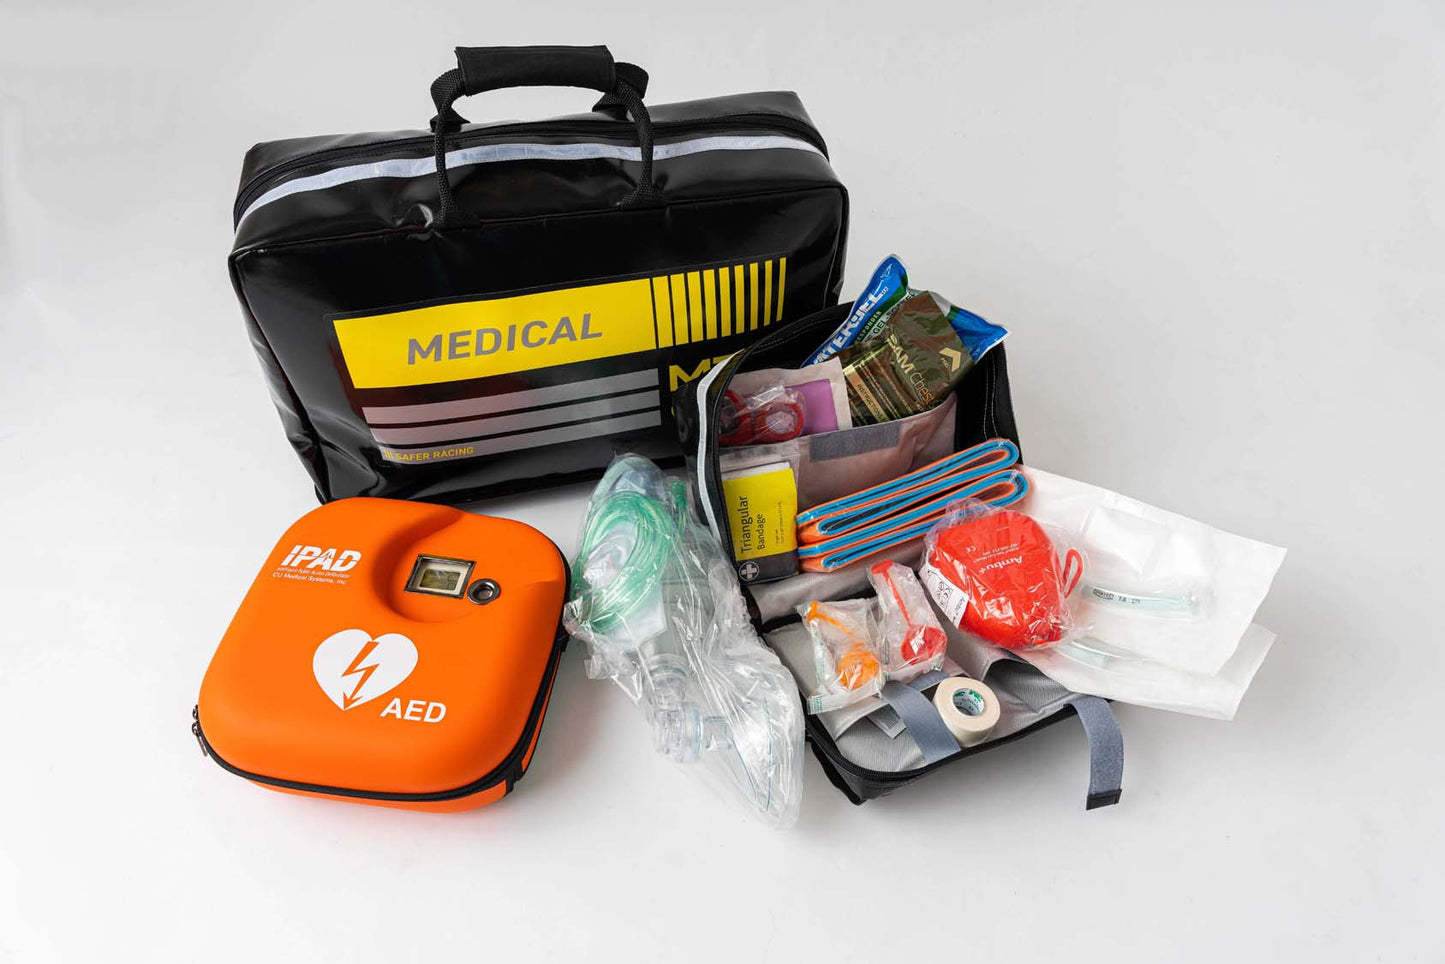 MDD Garage Medical Kit